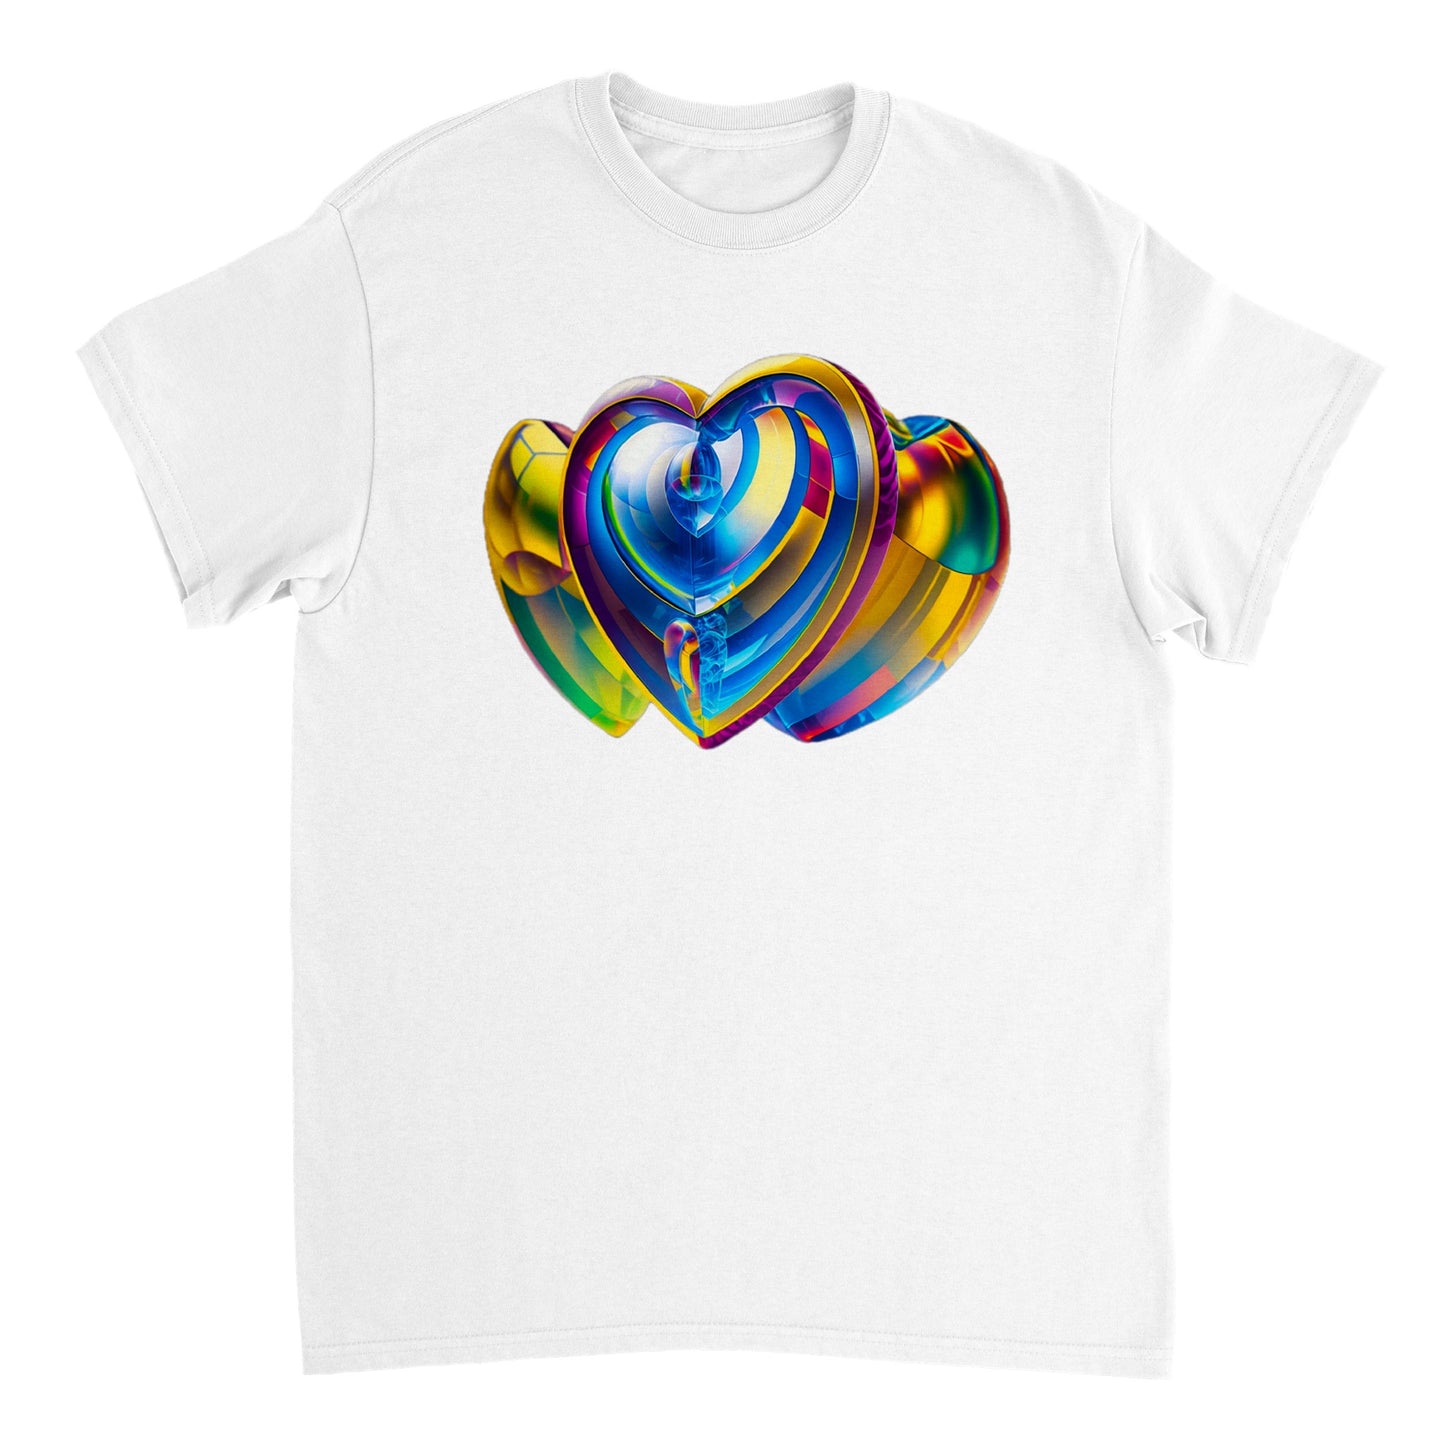 Love Heart - Heavyweight Unisex Crewneck T-shirt 73